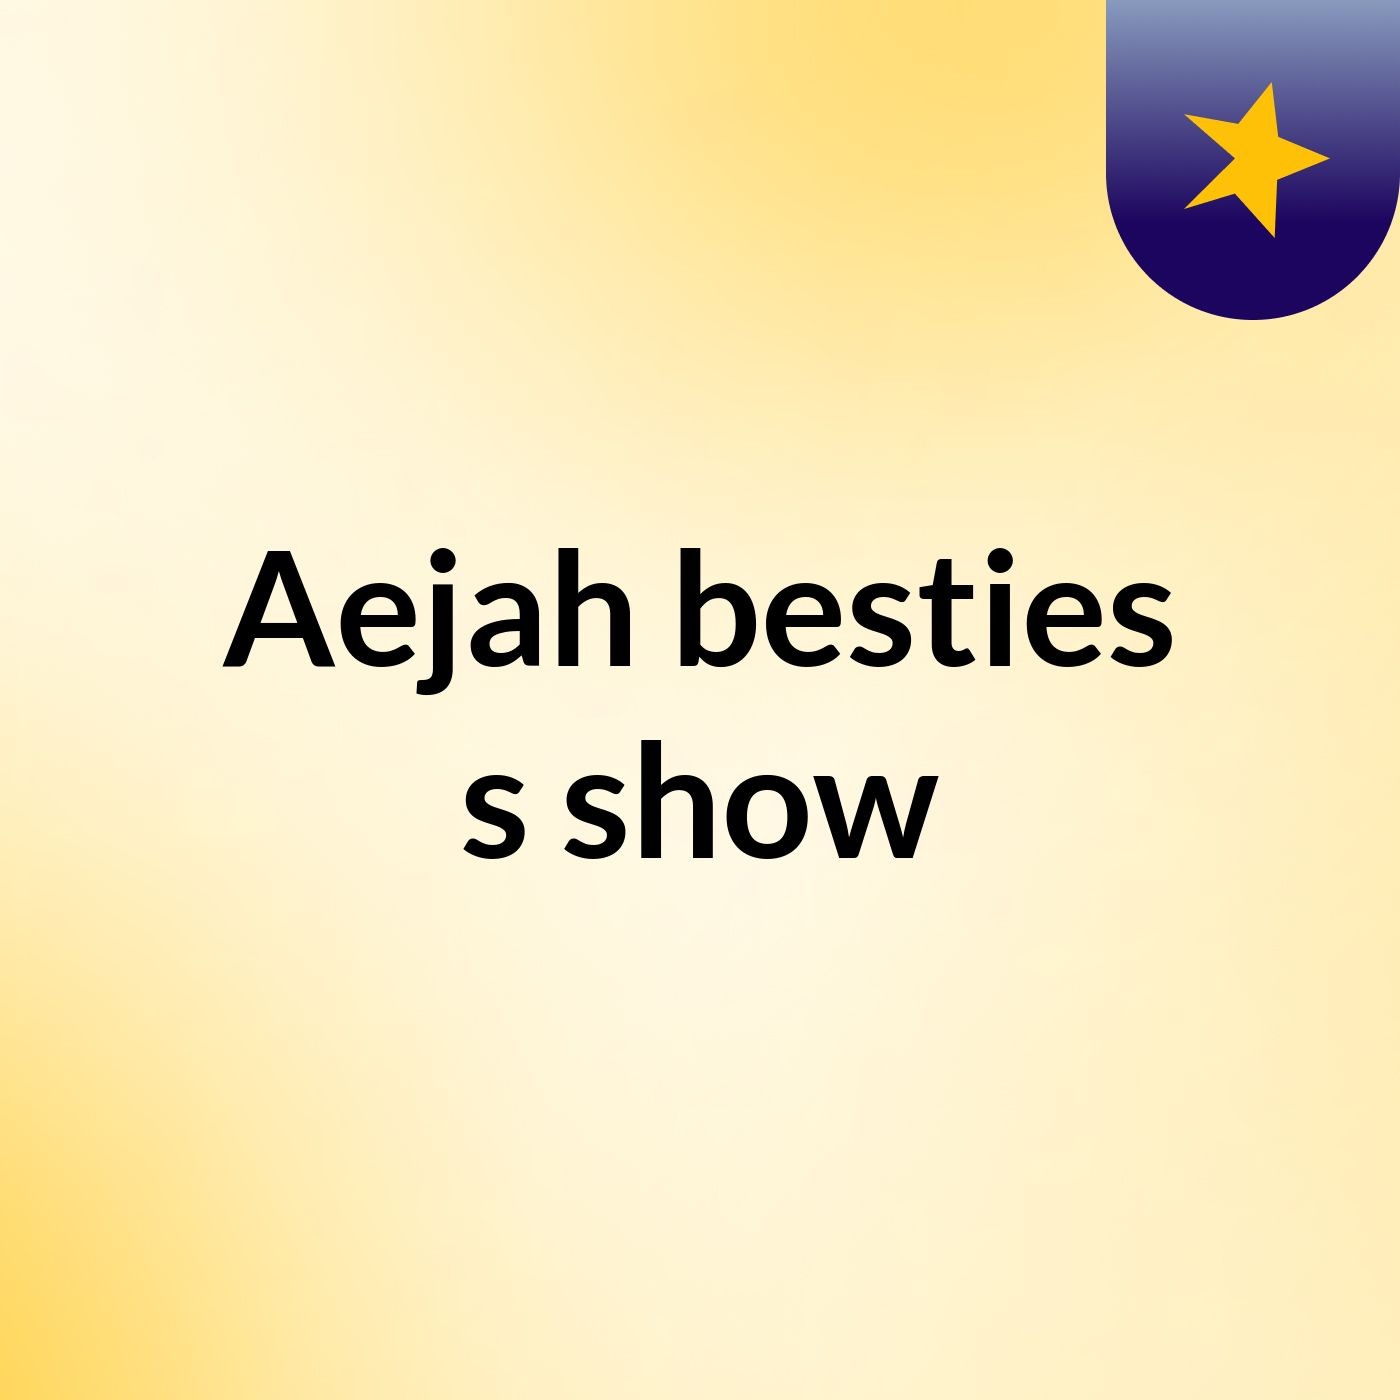 Episode 3 - Aejah besties's show